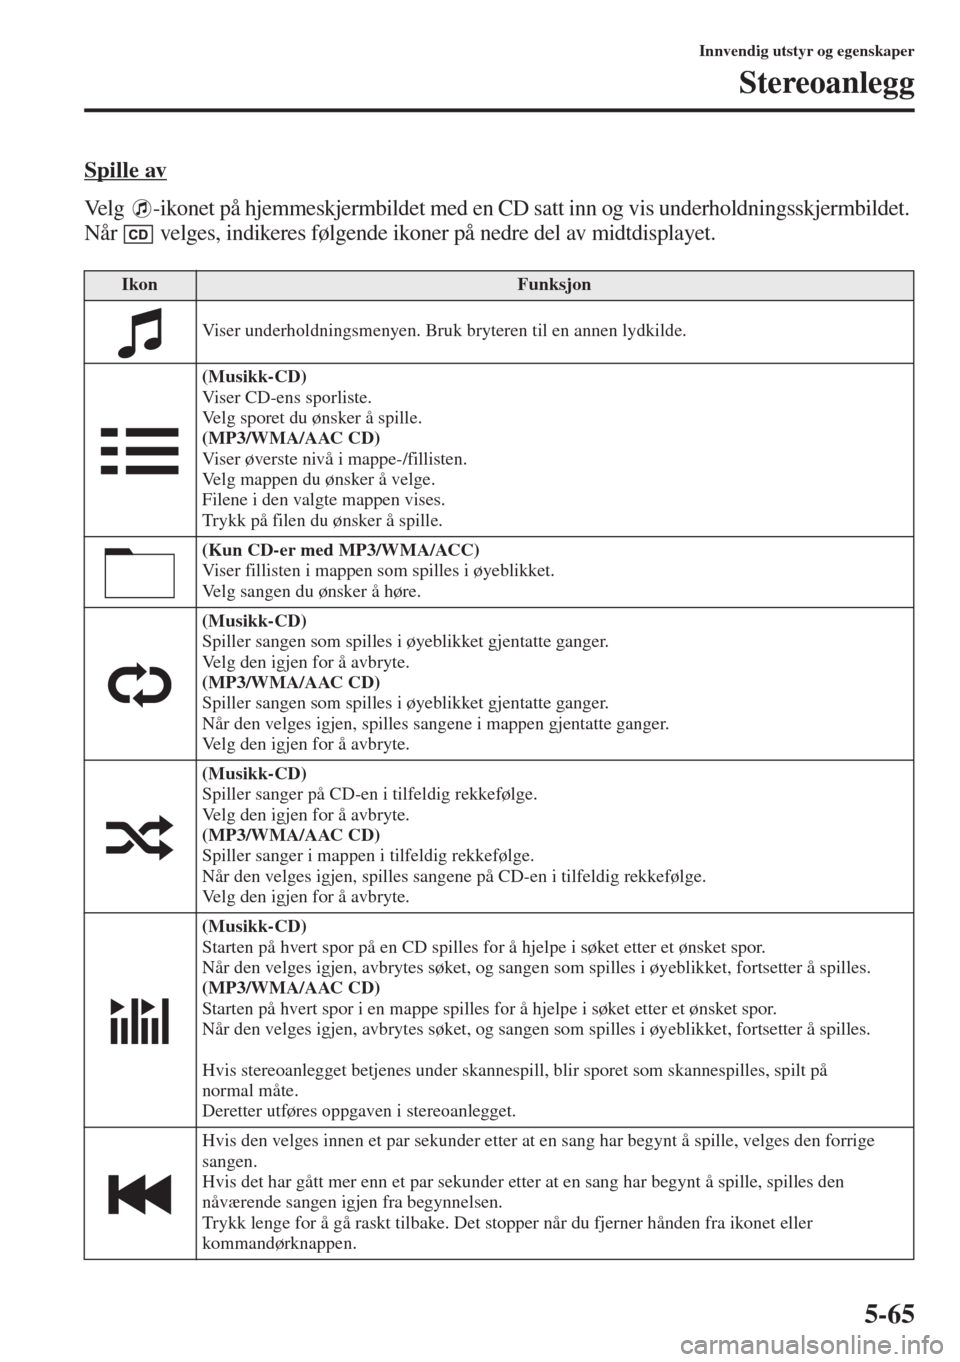 MAZDA MODEL 3 HATCHBACK 2015  Brukerhåndbok (in Norwegian) 5-65
Innvendig utstyr og egenskaper
Stereoanlegg
Spille av
Velg  -ikonet på hjemmeskjermbildet med en CD satt inn og vis underholdningsskjermbildet. 
Når   velges, indikeres følgende ikoner på ned